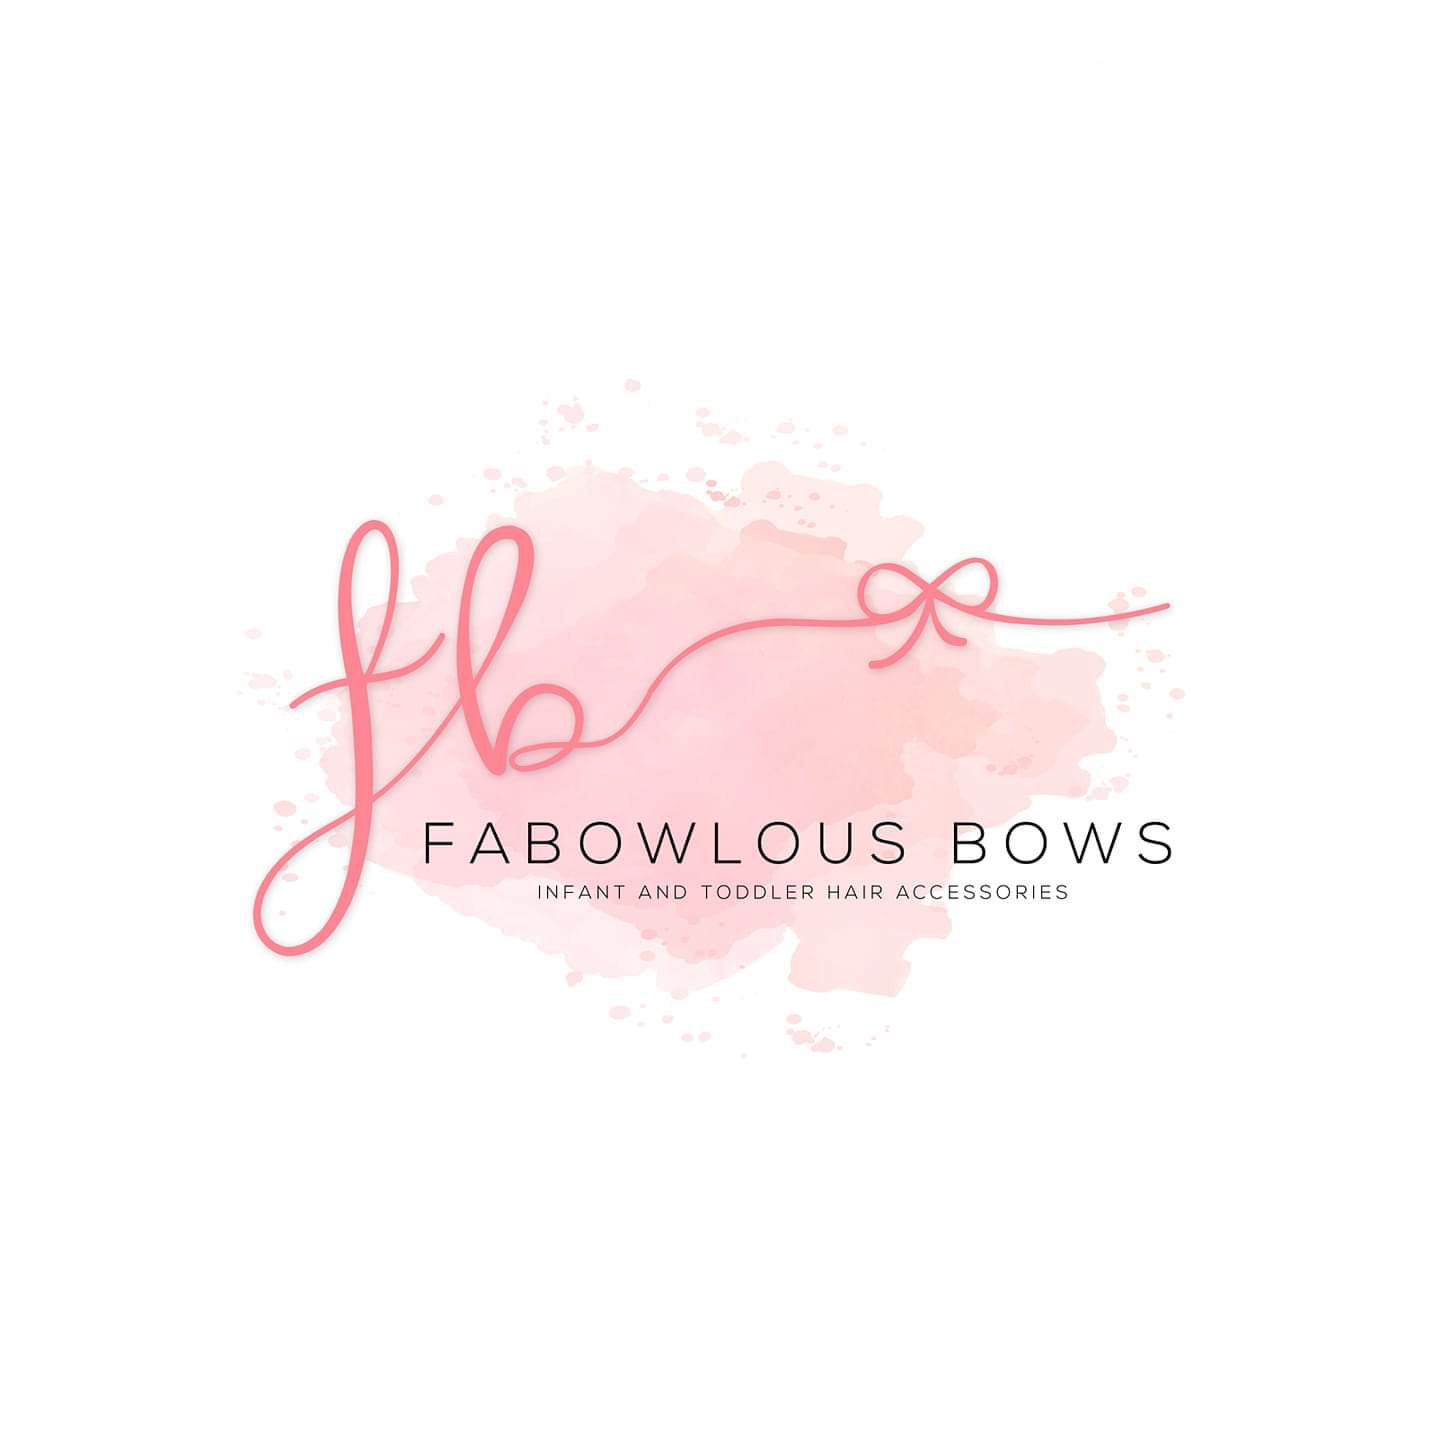 Fabowlous Bow's